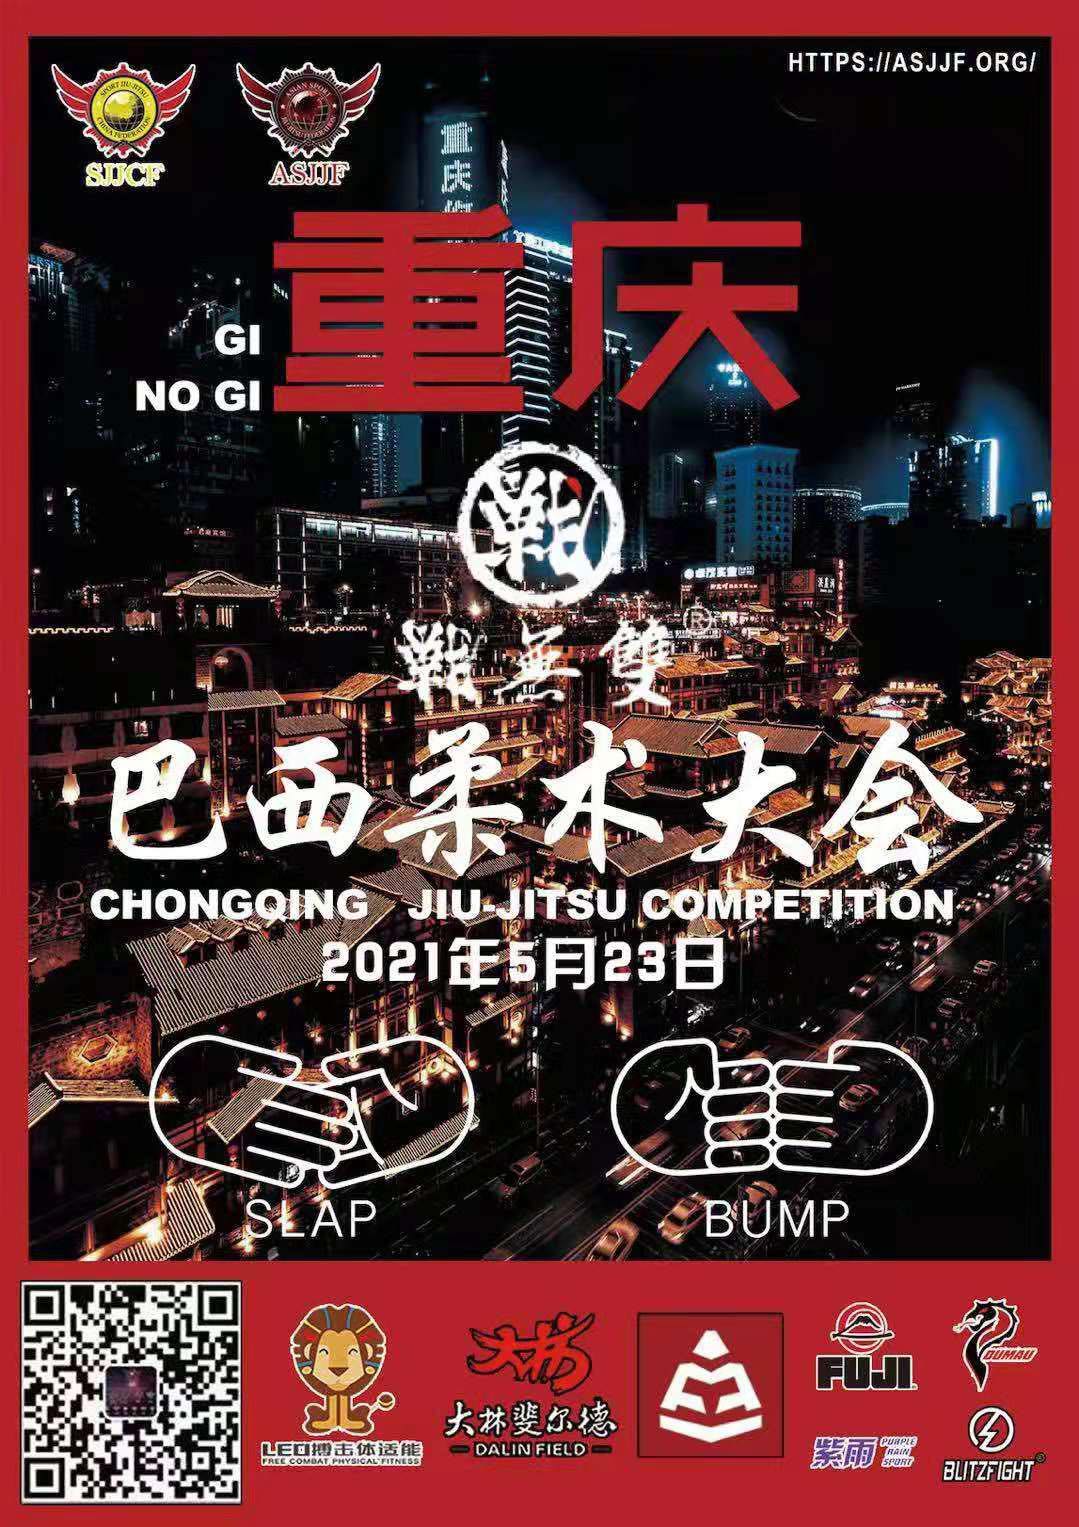 sjjcf chongqing jiu jitsu championship 2021